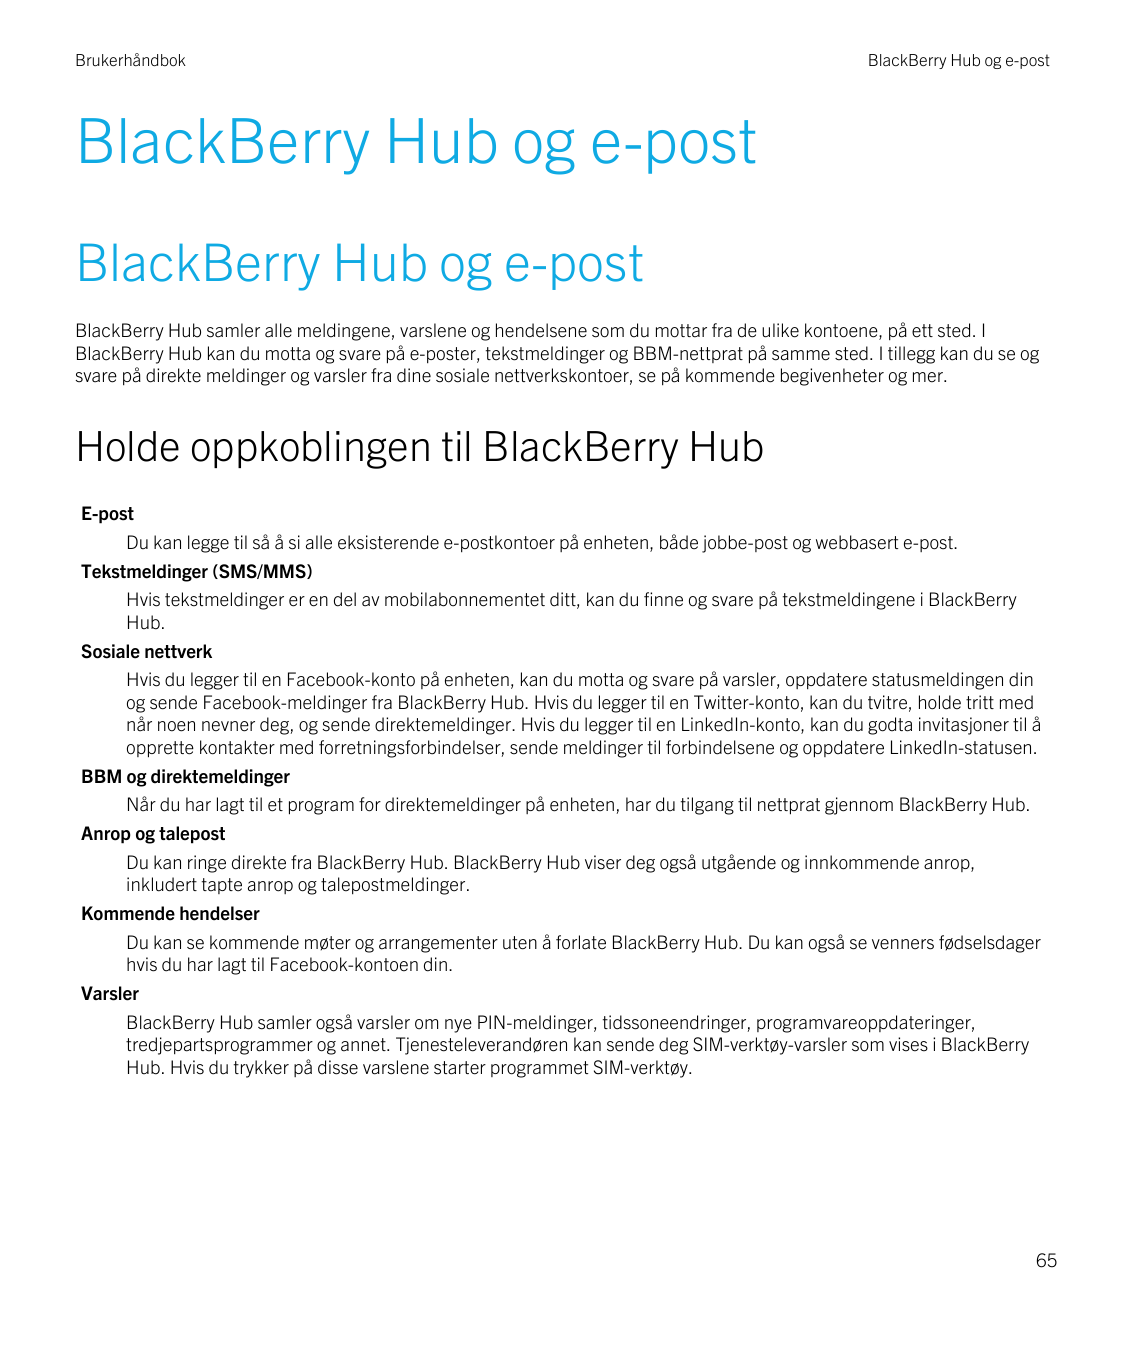 BrukerhåndbokBlackBerry Hub og e-postBlackBerry Hub og e-postBlackBerry Hub og e-postBlackBerry Hub samler alle meldingene, vars